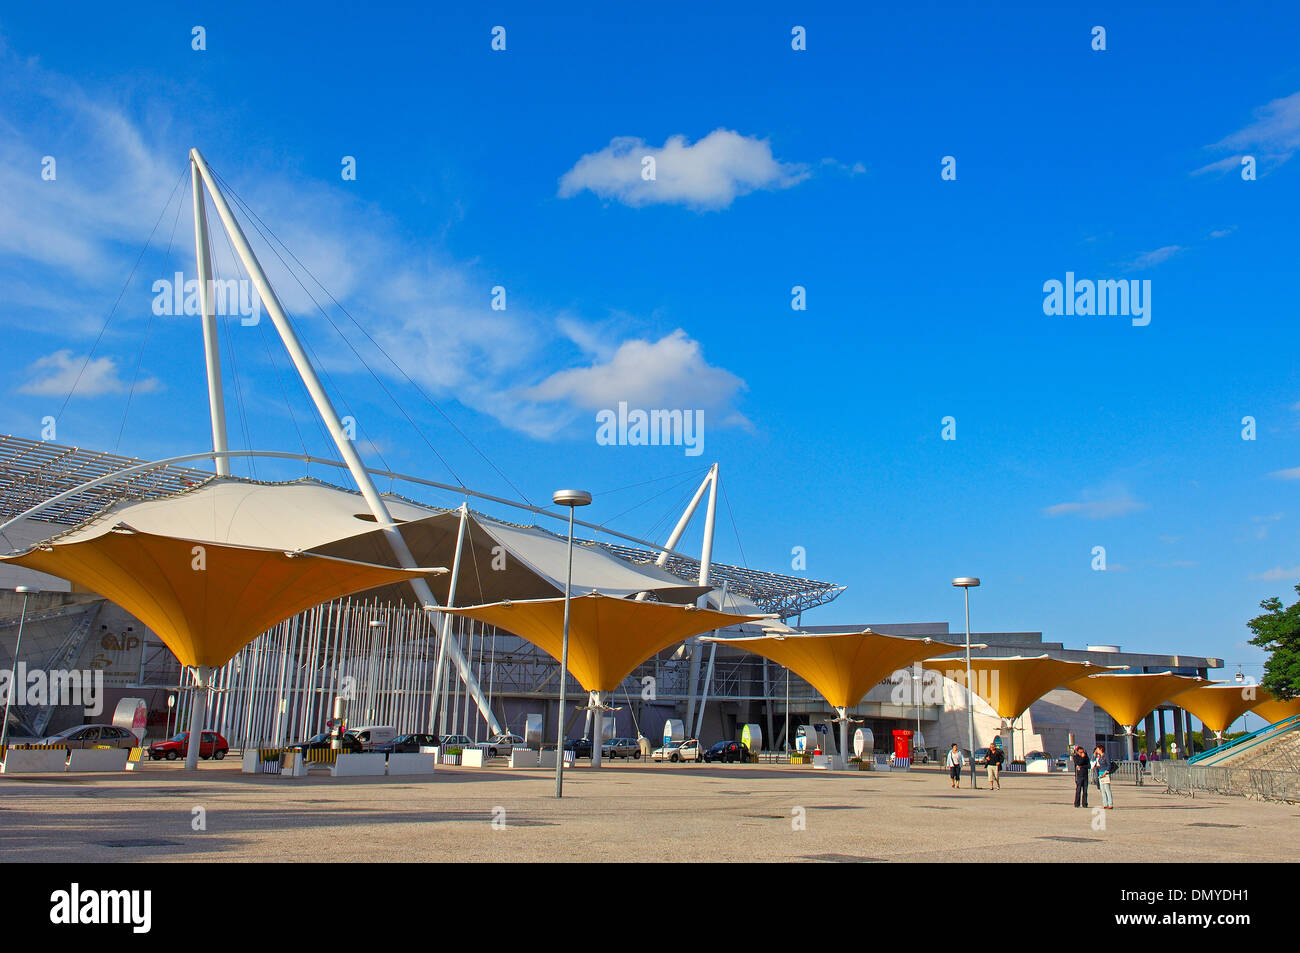 Lisbonne. Parque das Nações, Parc des Nations de Lisbonne, l'Expo 98. Portugal Banque D'Images